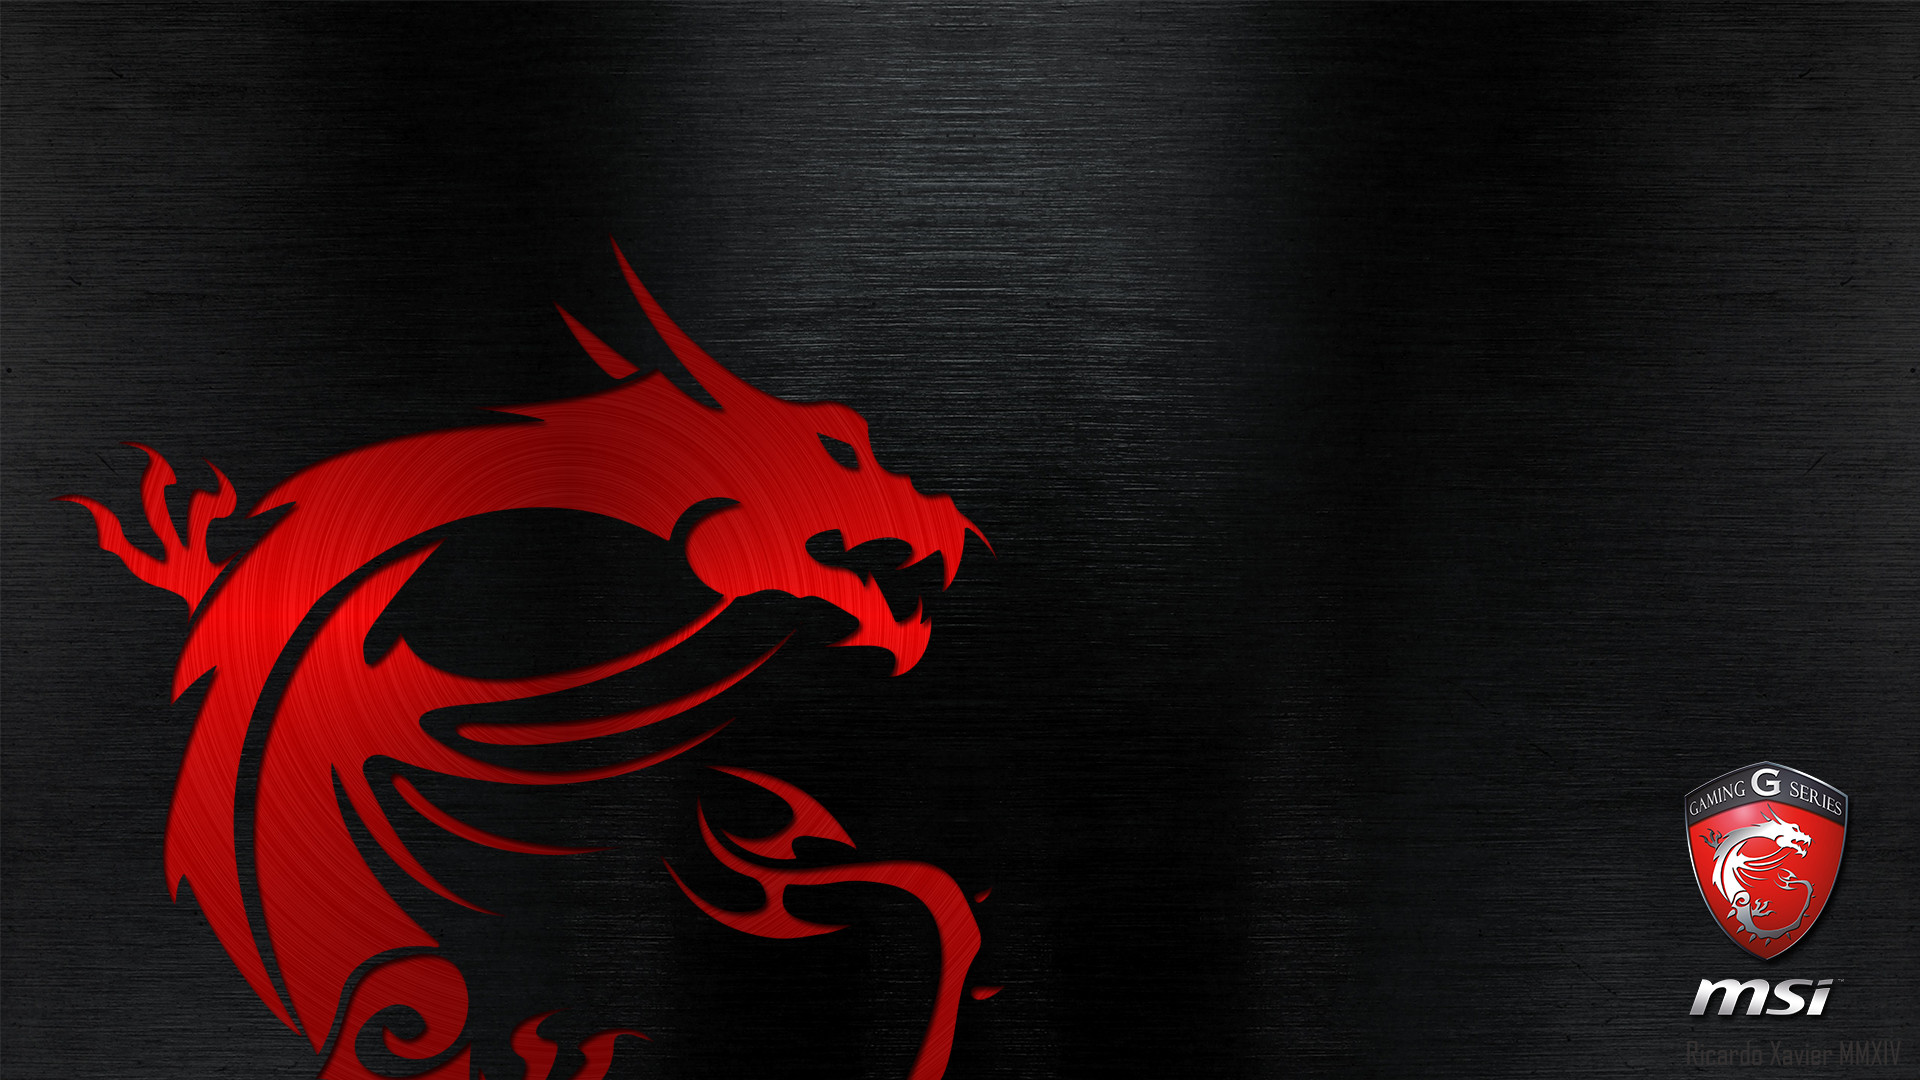 1920x1080 MSI Gaming Wallpaper - red dragon emobossed (1920Ã1080) | def | Pinterest |  Digital marketing